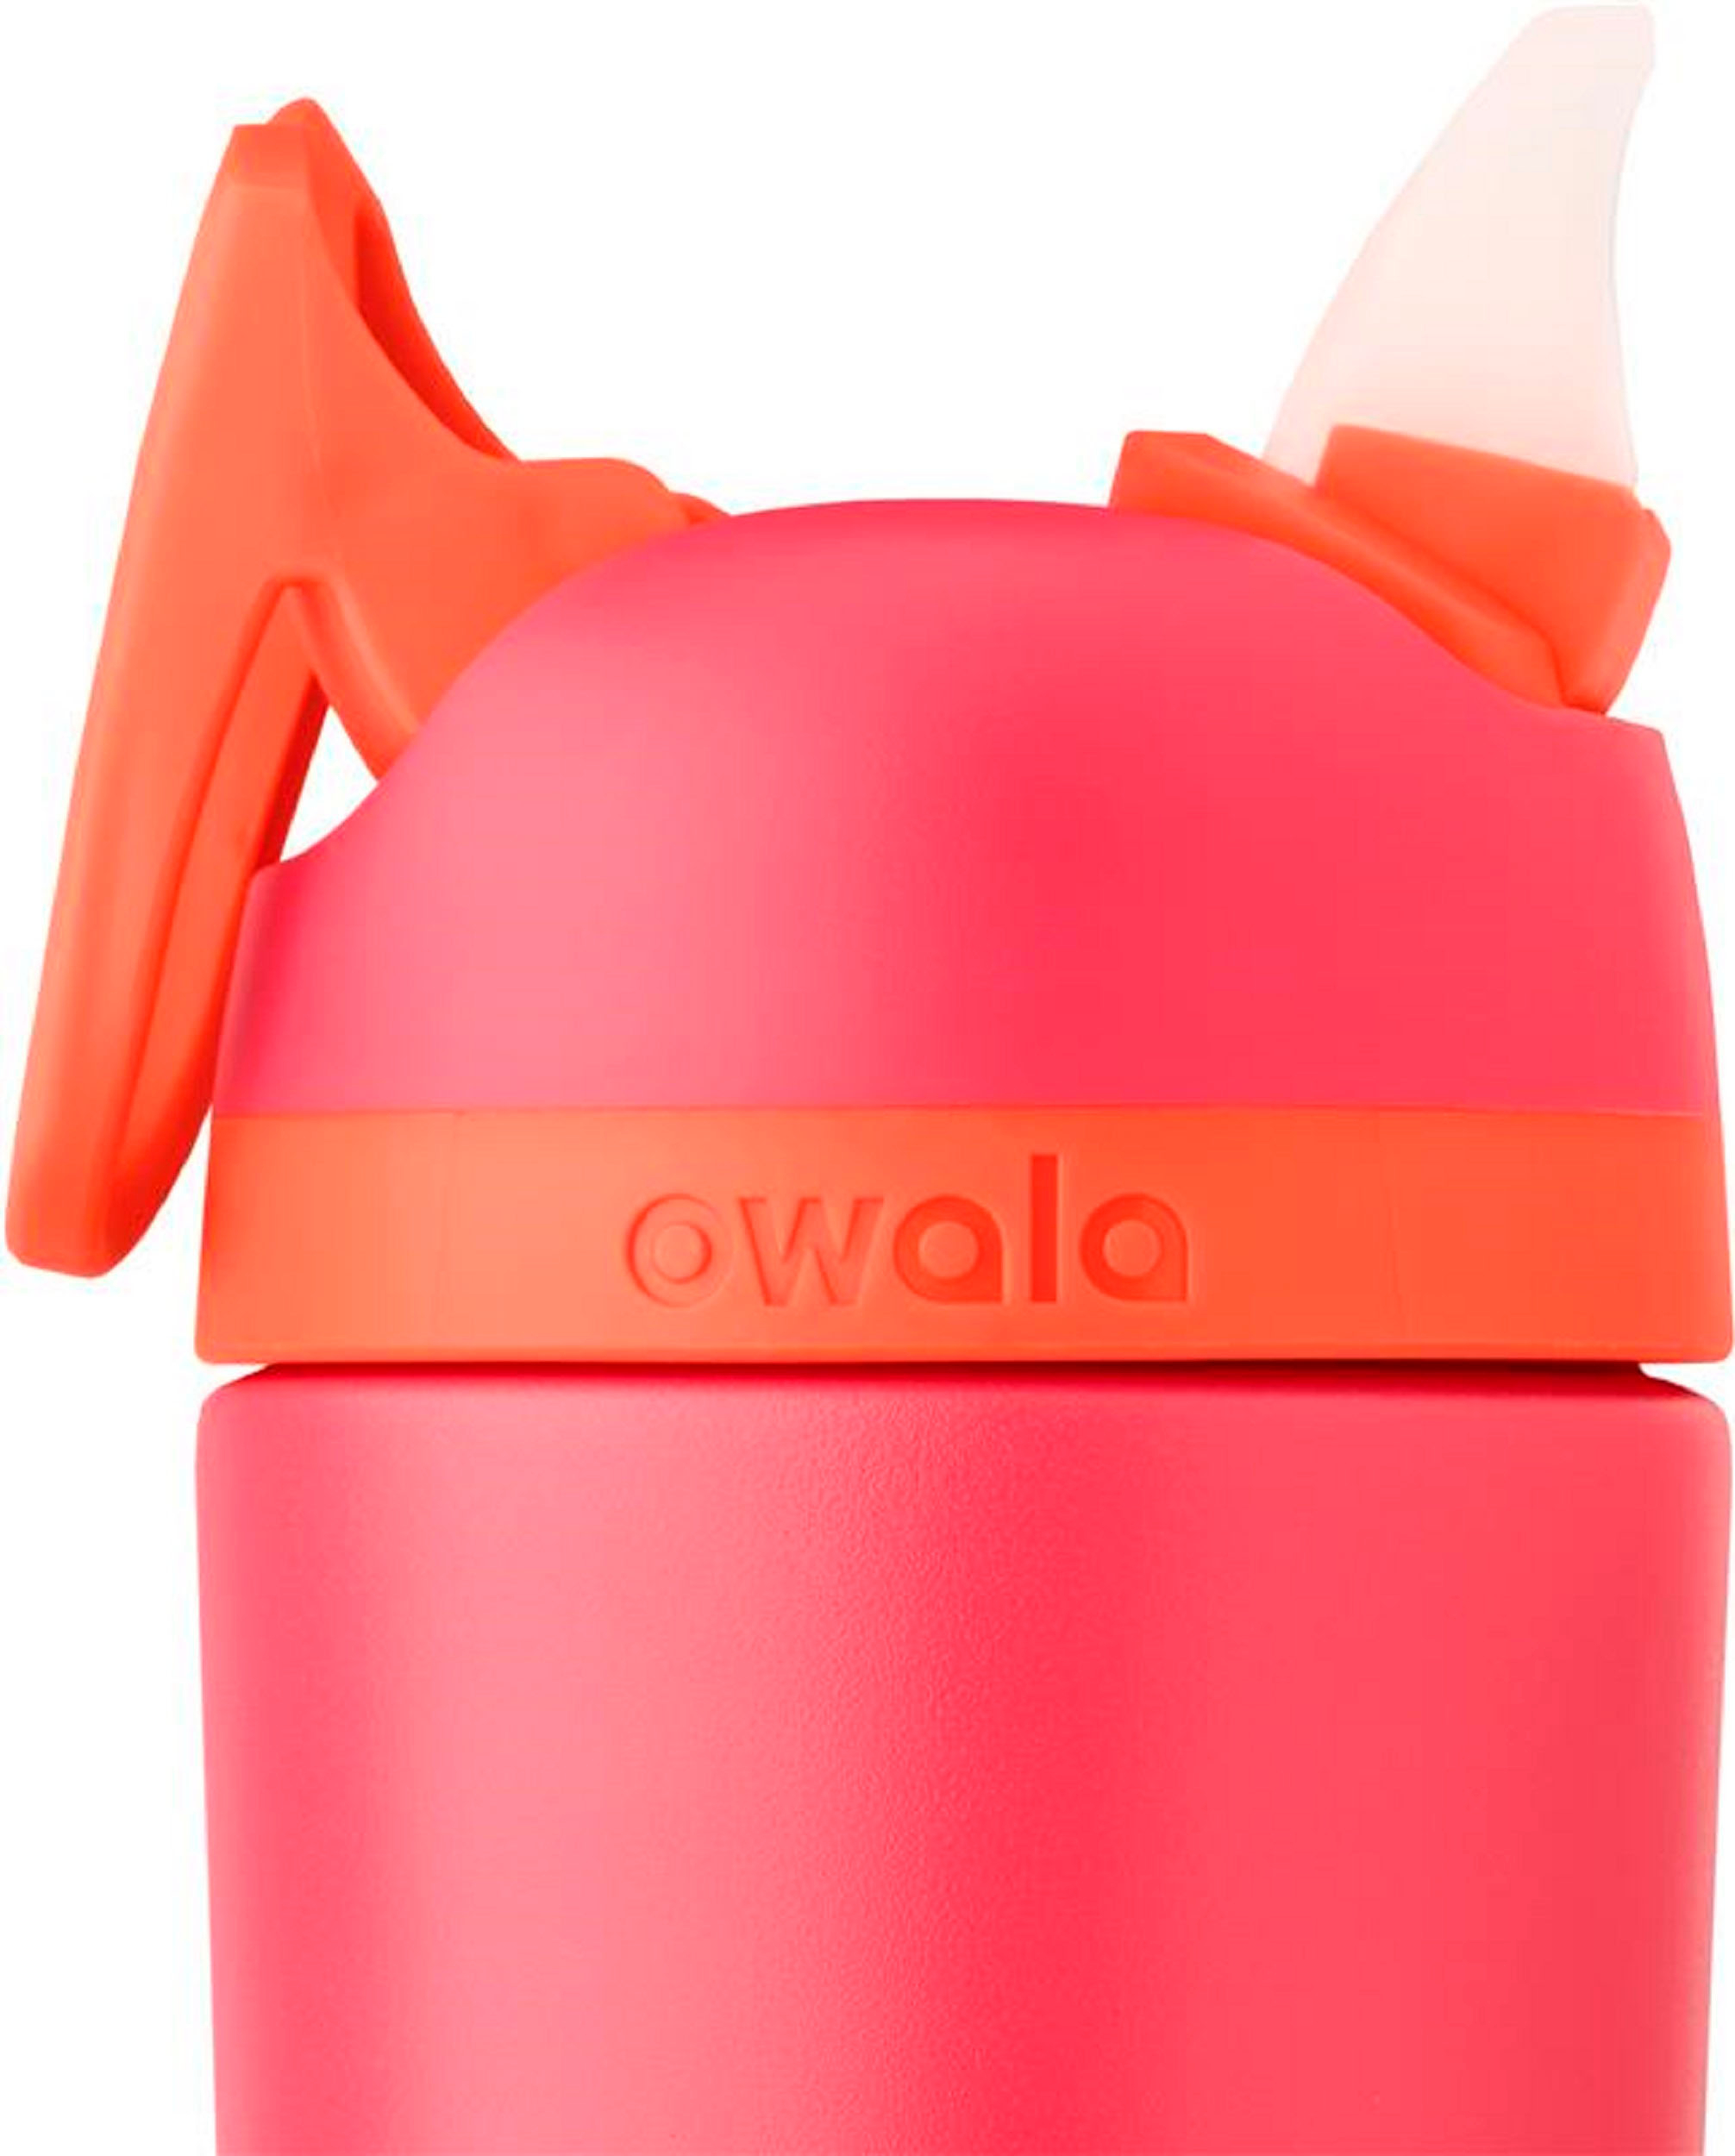 Owala Kids Flip Stainless Steel 14-oz. Pink/Pink C05523 - Best Buy